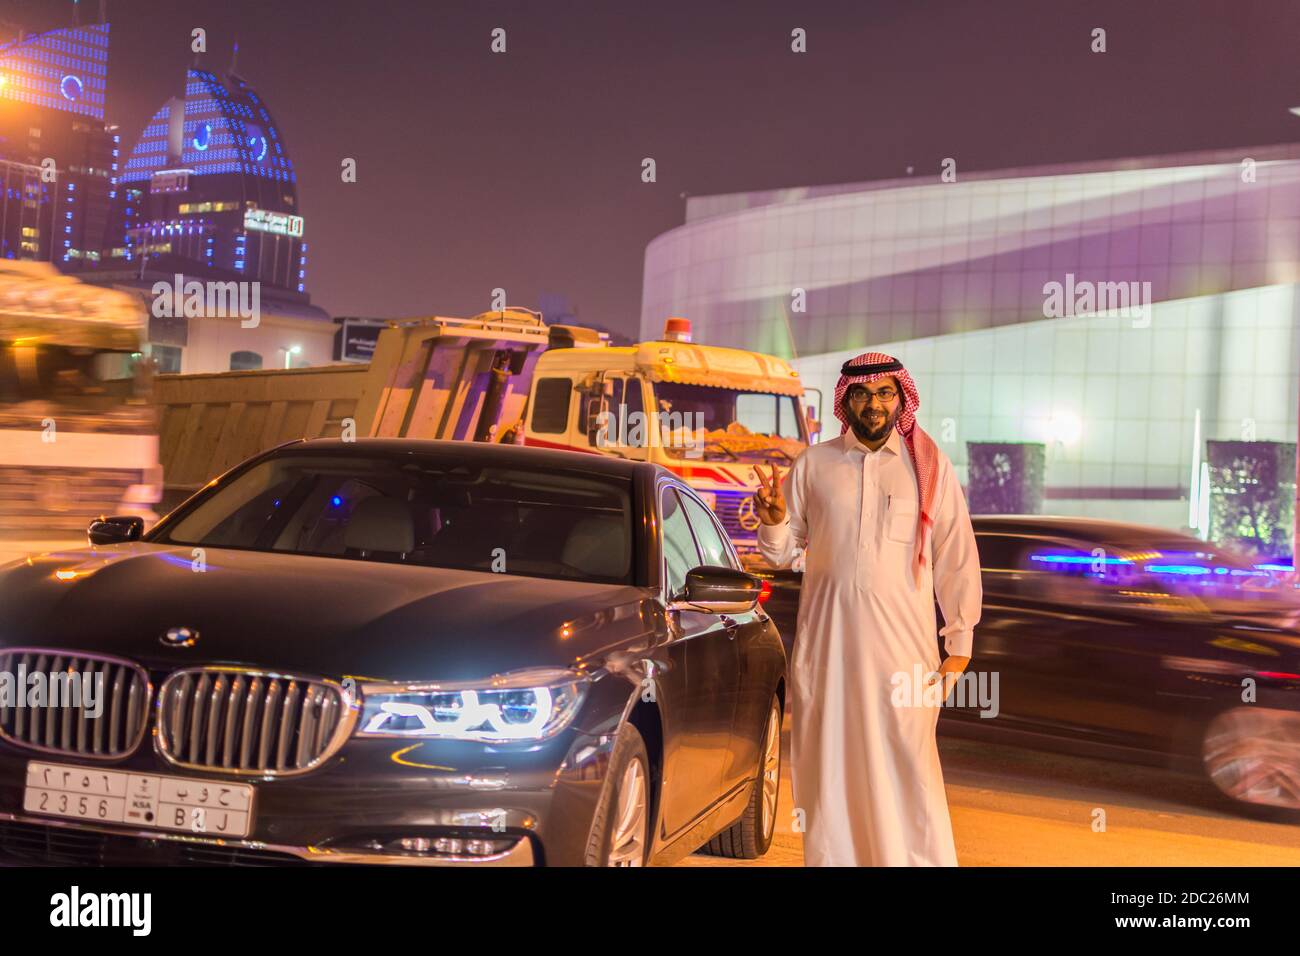 Ein reicher saudi-Araber, der traditionelle Kleidung trägt und neben einem Luxusauto in der Nacht im Olaya District von Riad, Saudi-Arabien steht Stockfoto